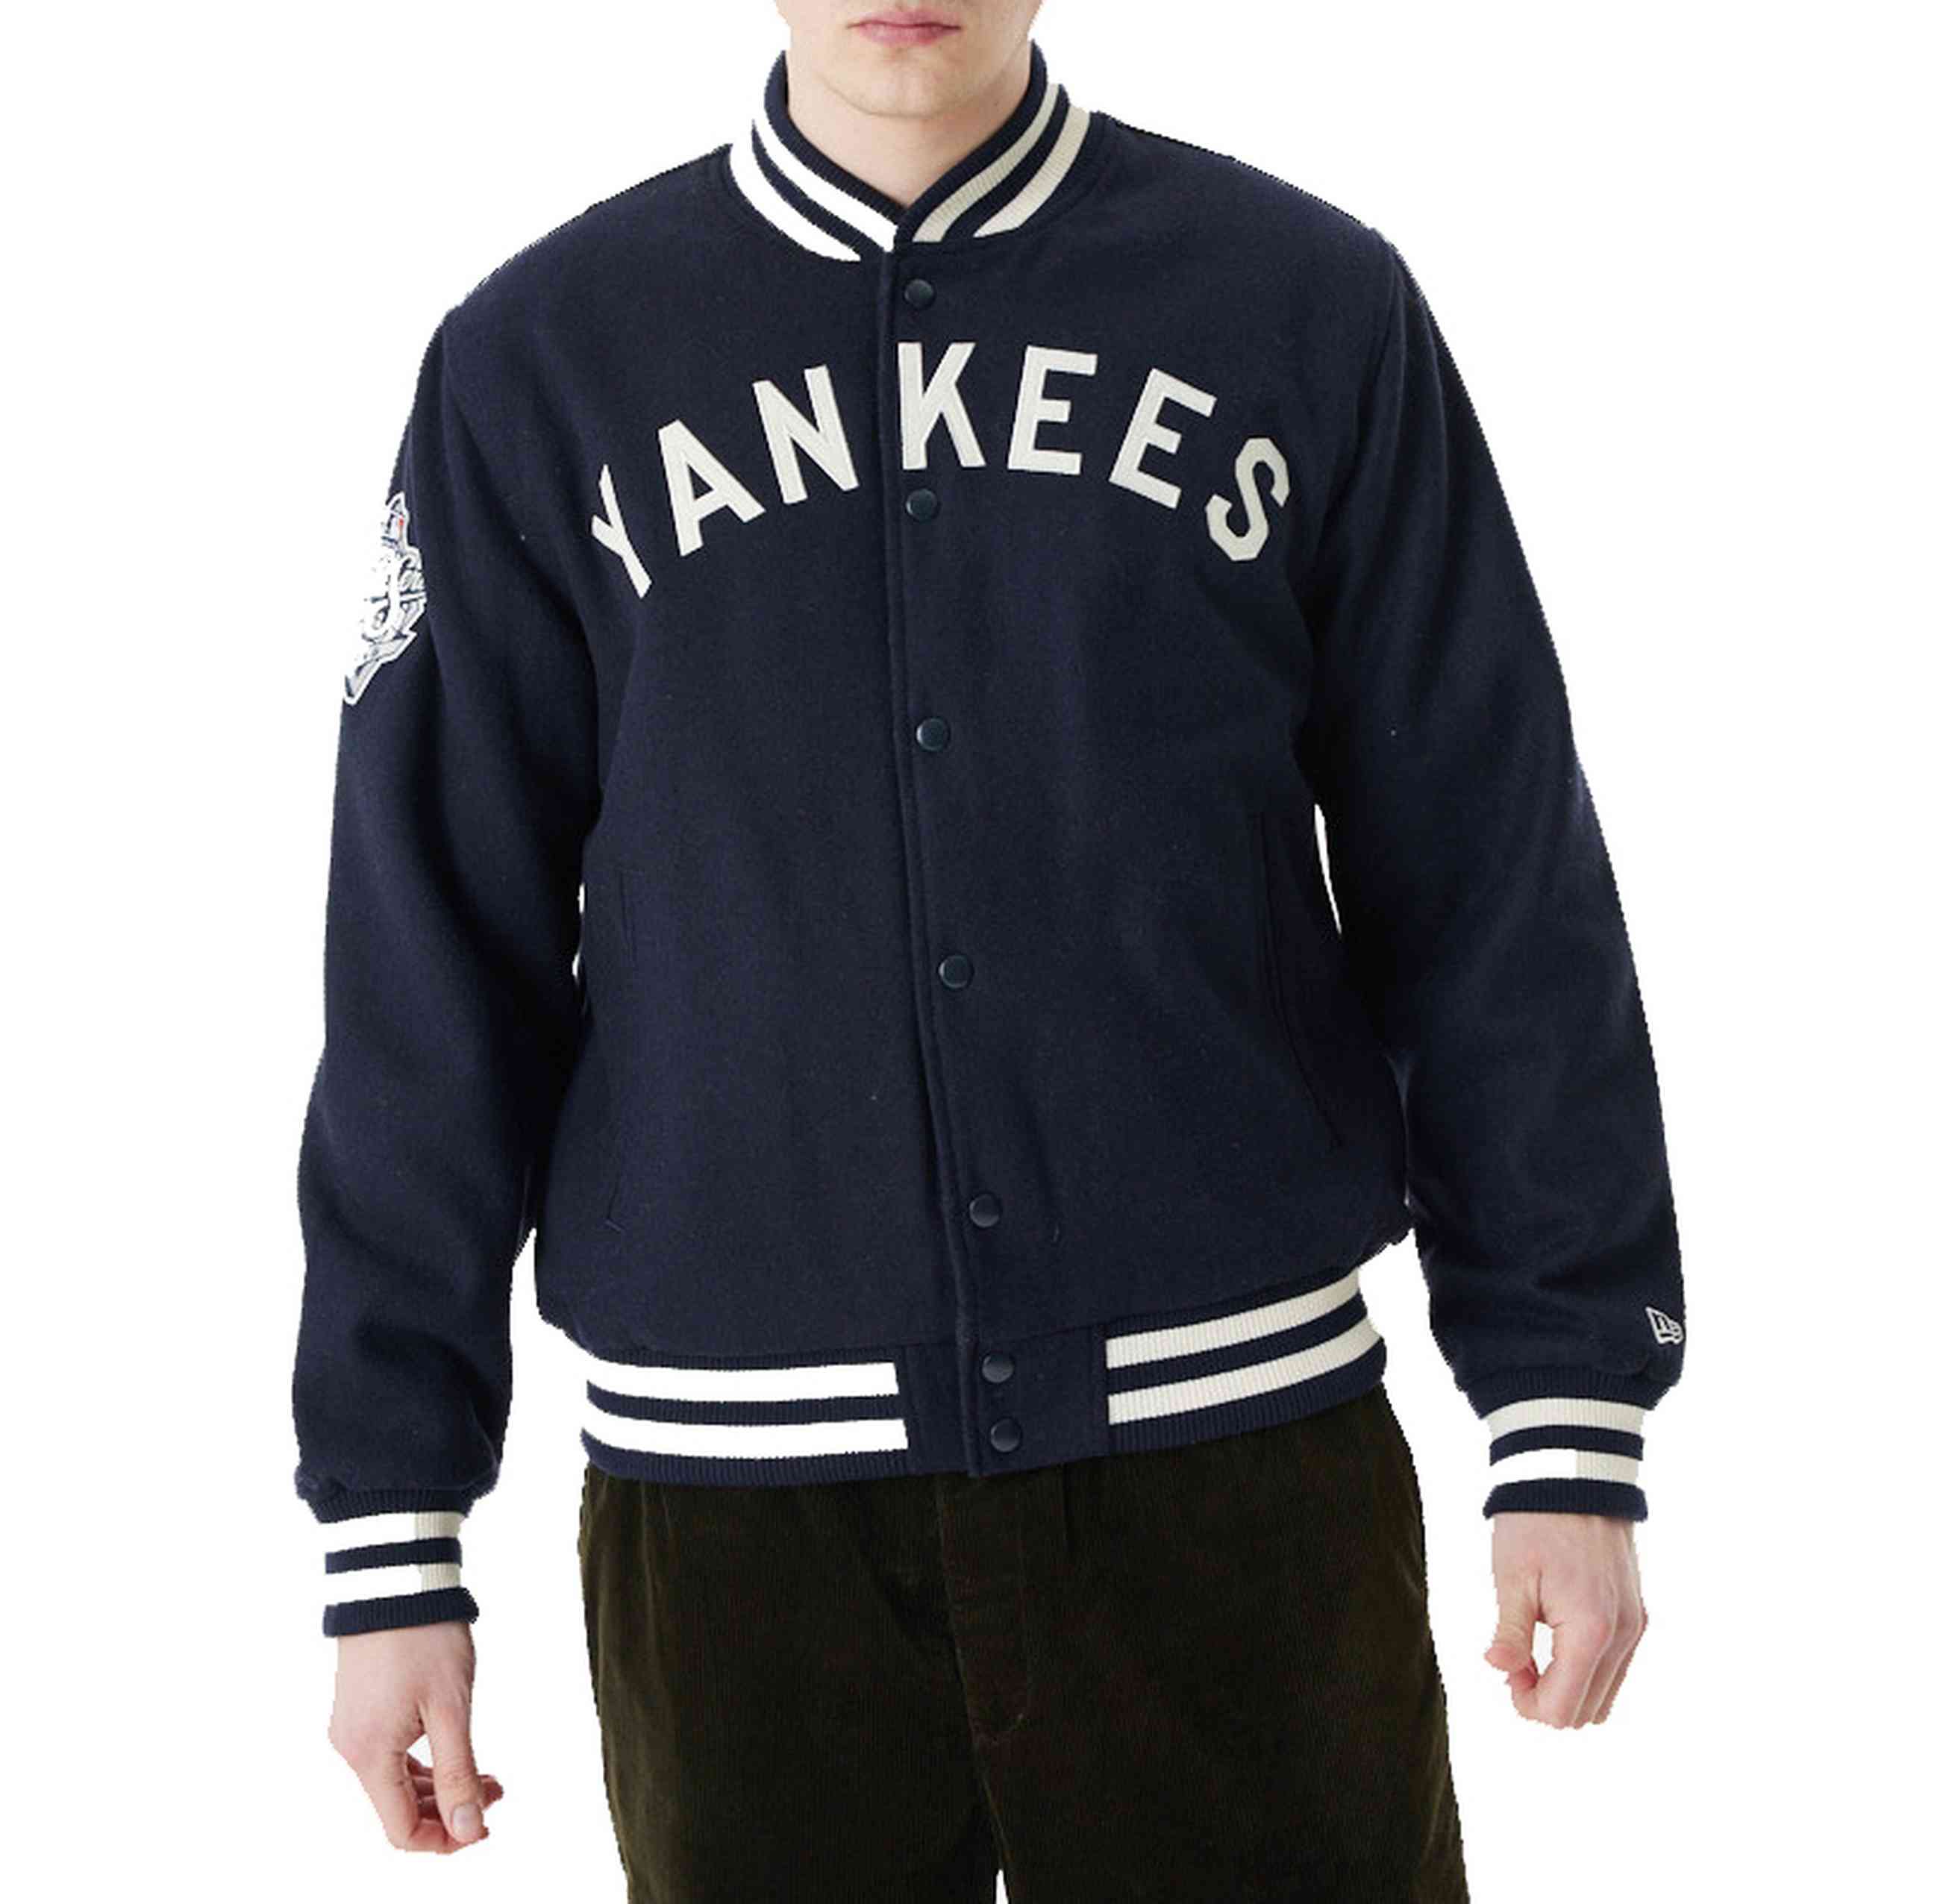 New Era - MLB New York Yankees Patch Varsity Jacke